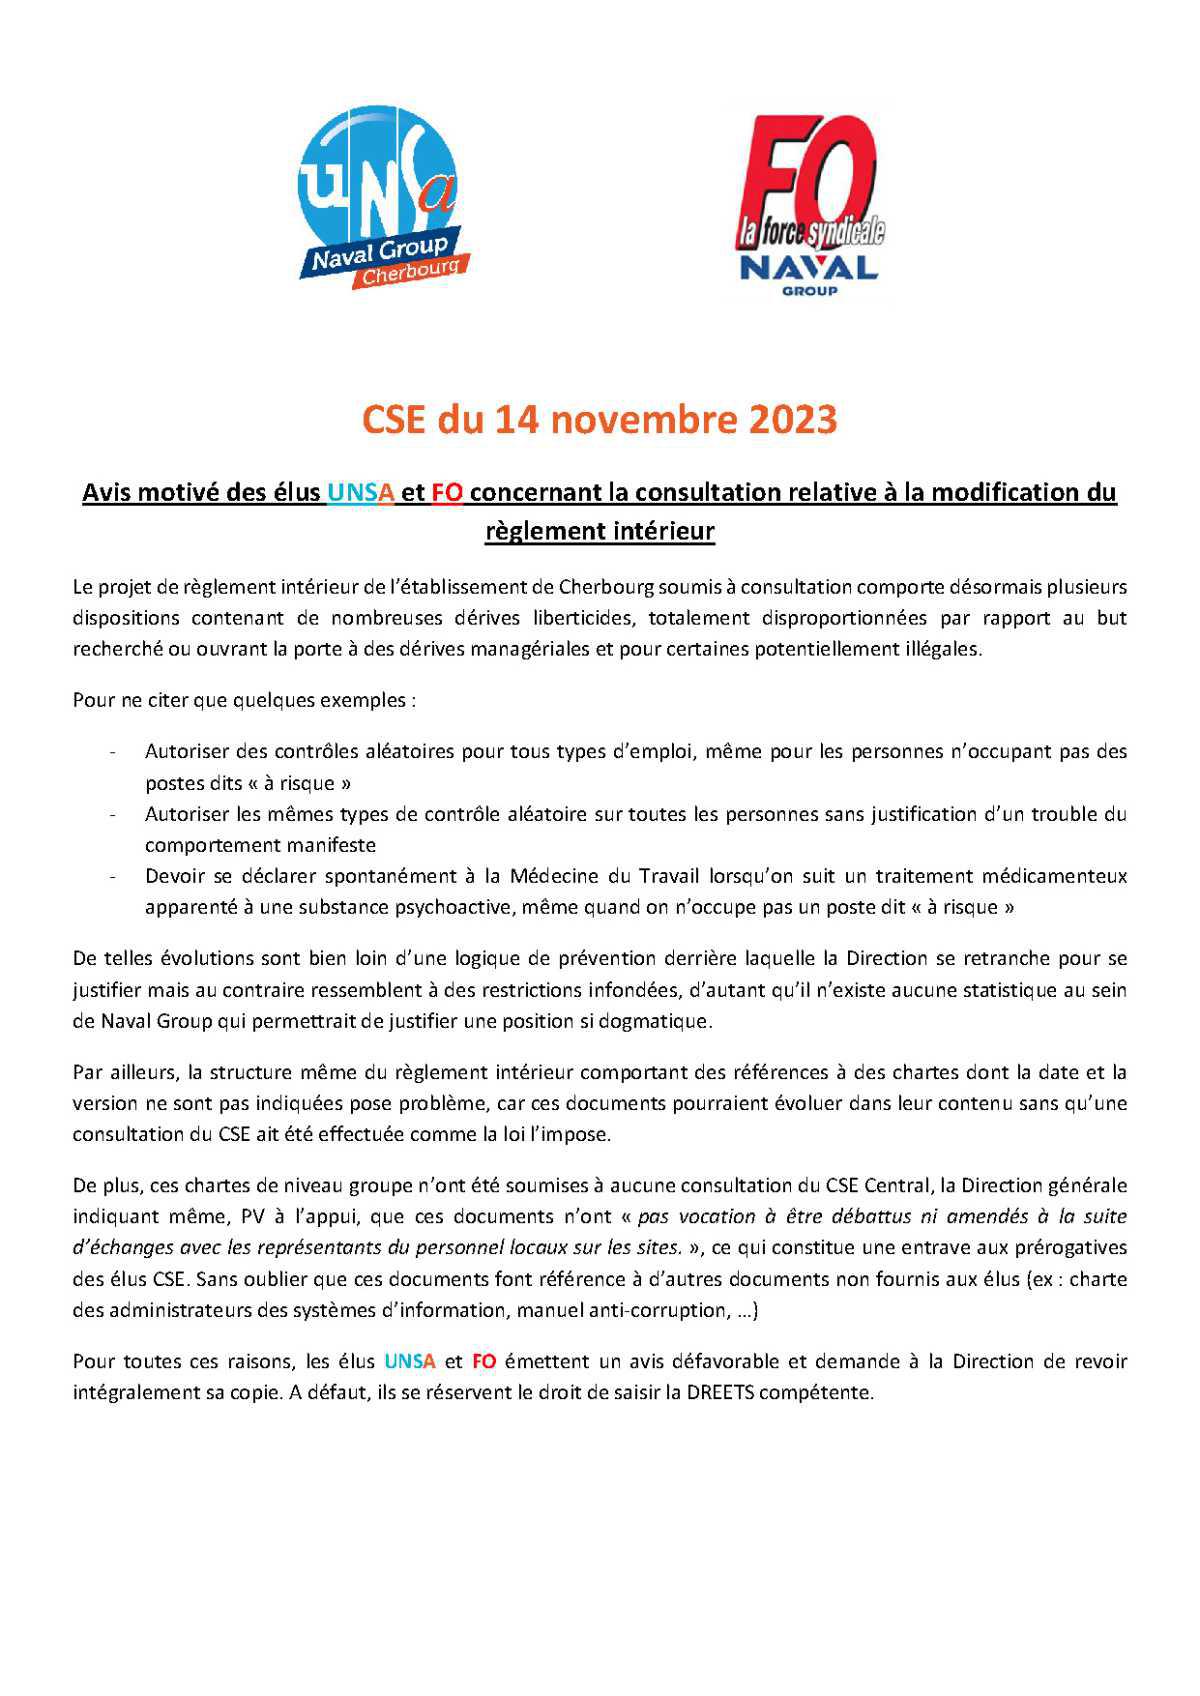 CSE de Cherbourg - Réunion du 14 novembre 2023 - Avis motivé des élus UNSA et FO sur le Réglement Intérieur